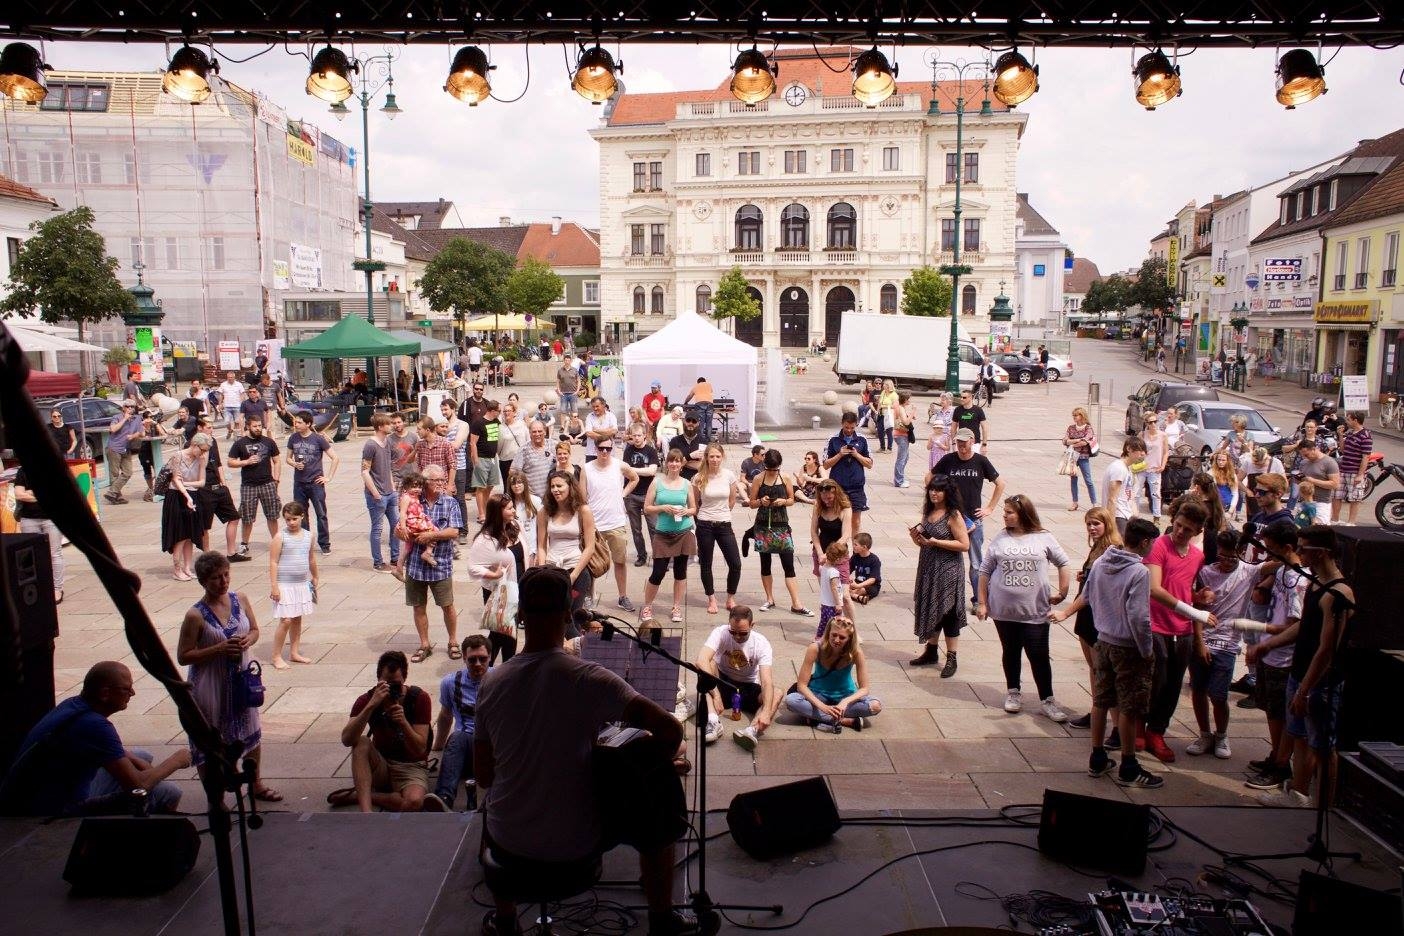 Musik, Action, Food Trucks – Das war unser CROWD`n´RUAM – Jugendkulturfestl am Hauptplatz in Tulln. Mit Video!